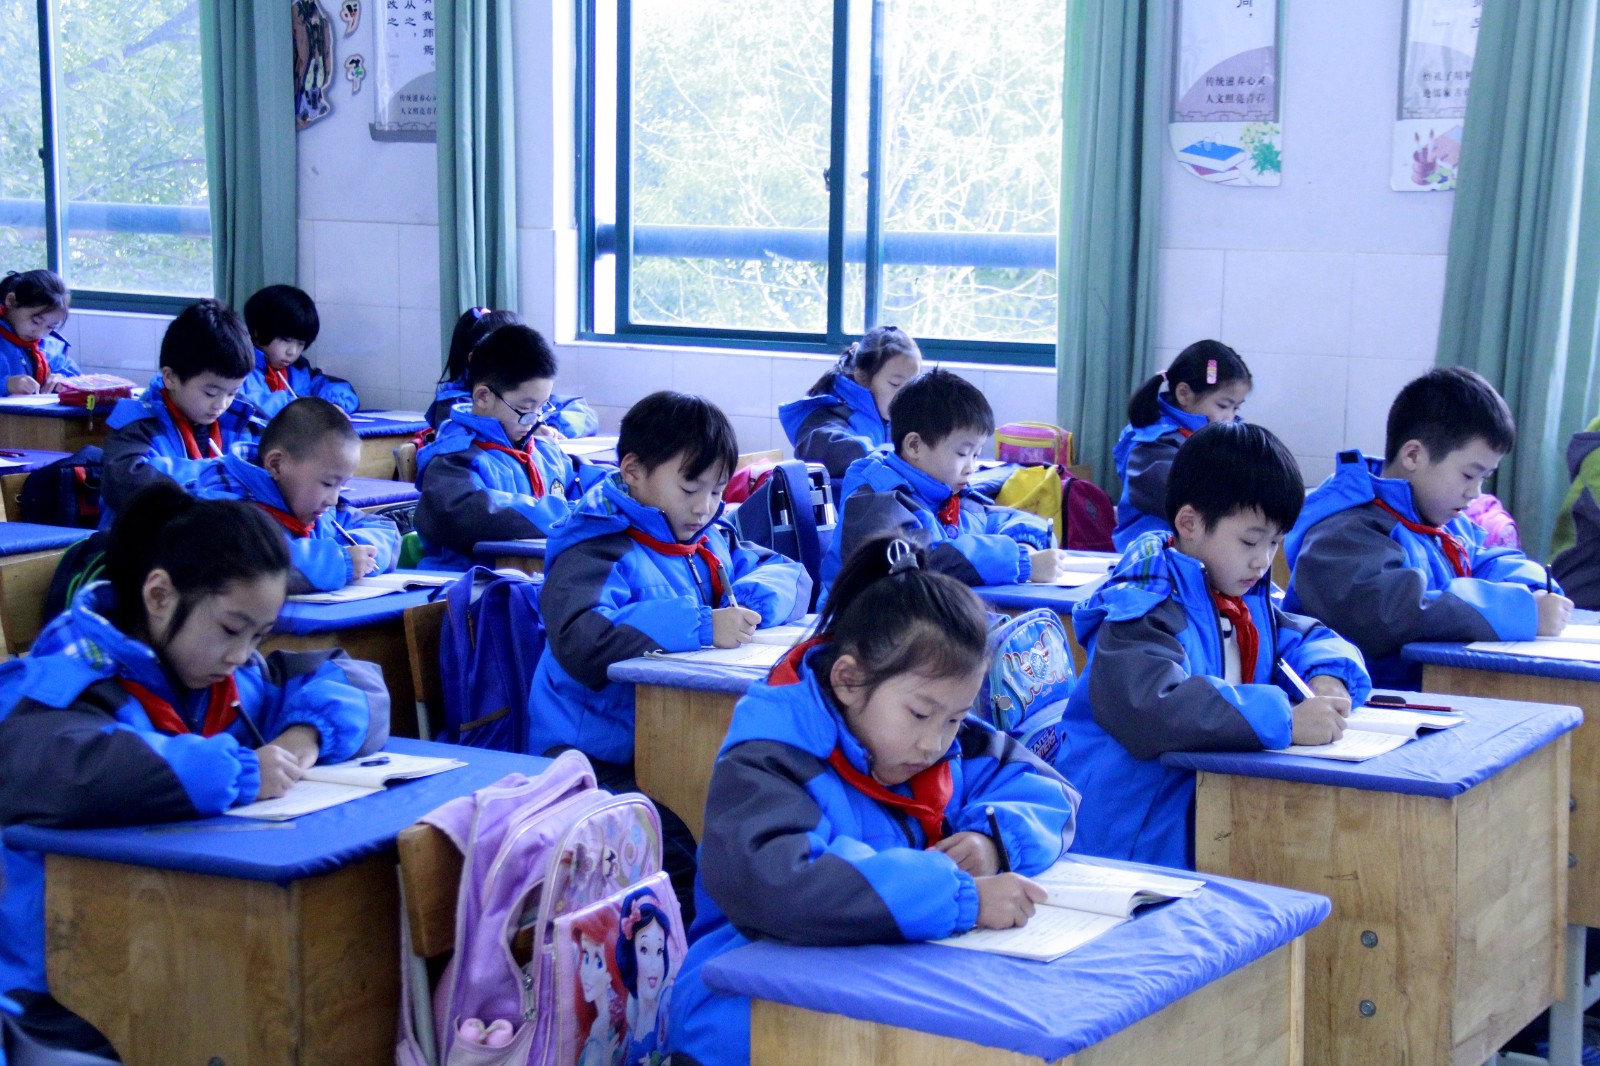 点横撇捺 规范写字 ——记泗门镇中心小学举行2017学年书法水平测试